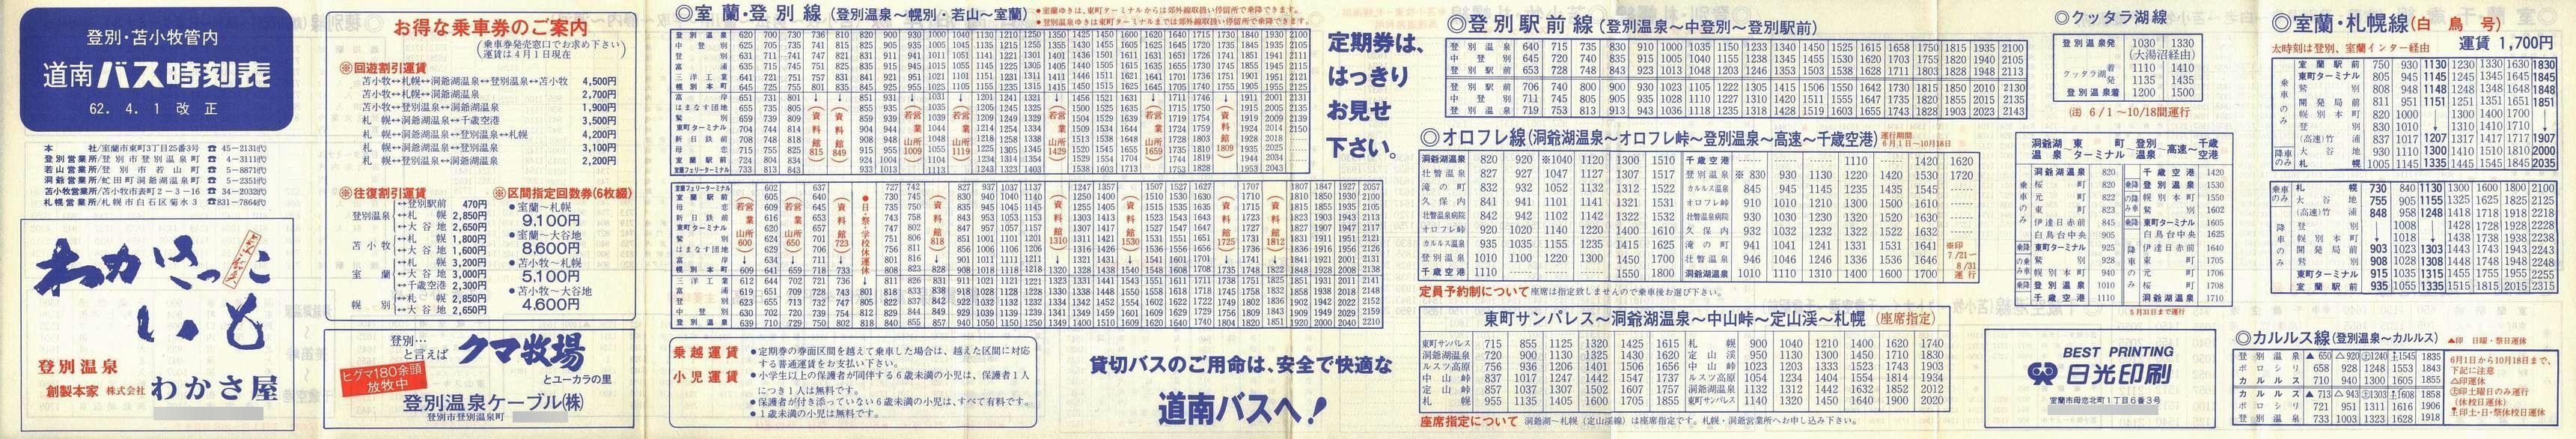 1987-04-01改正_道南バス_登別・苫小牧管内時刻表表面